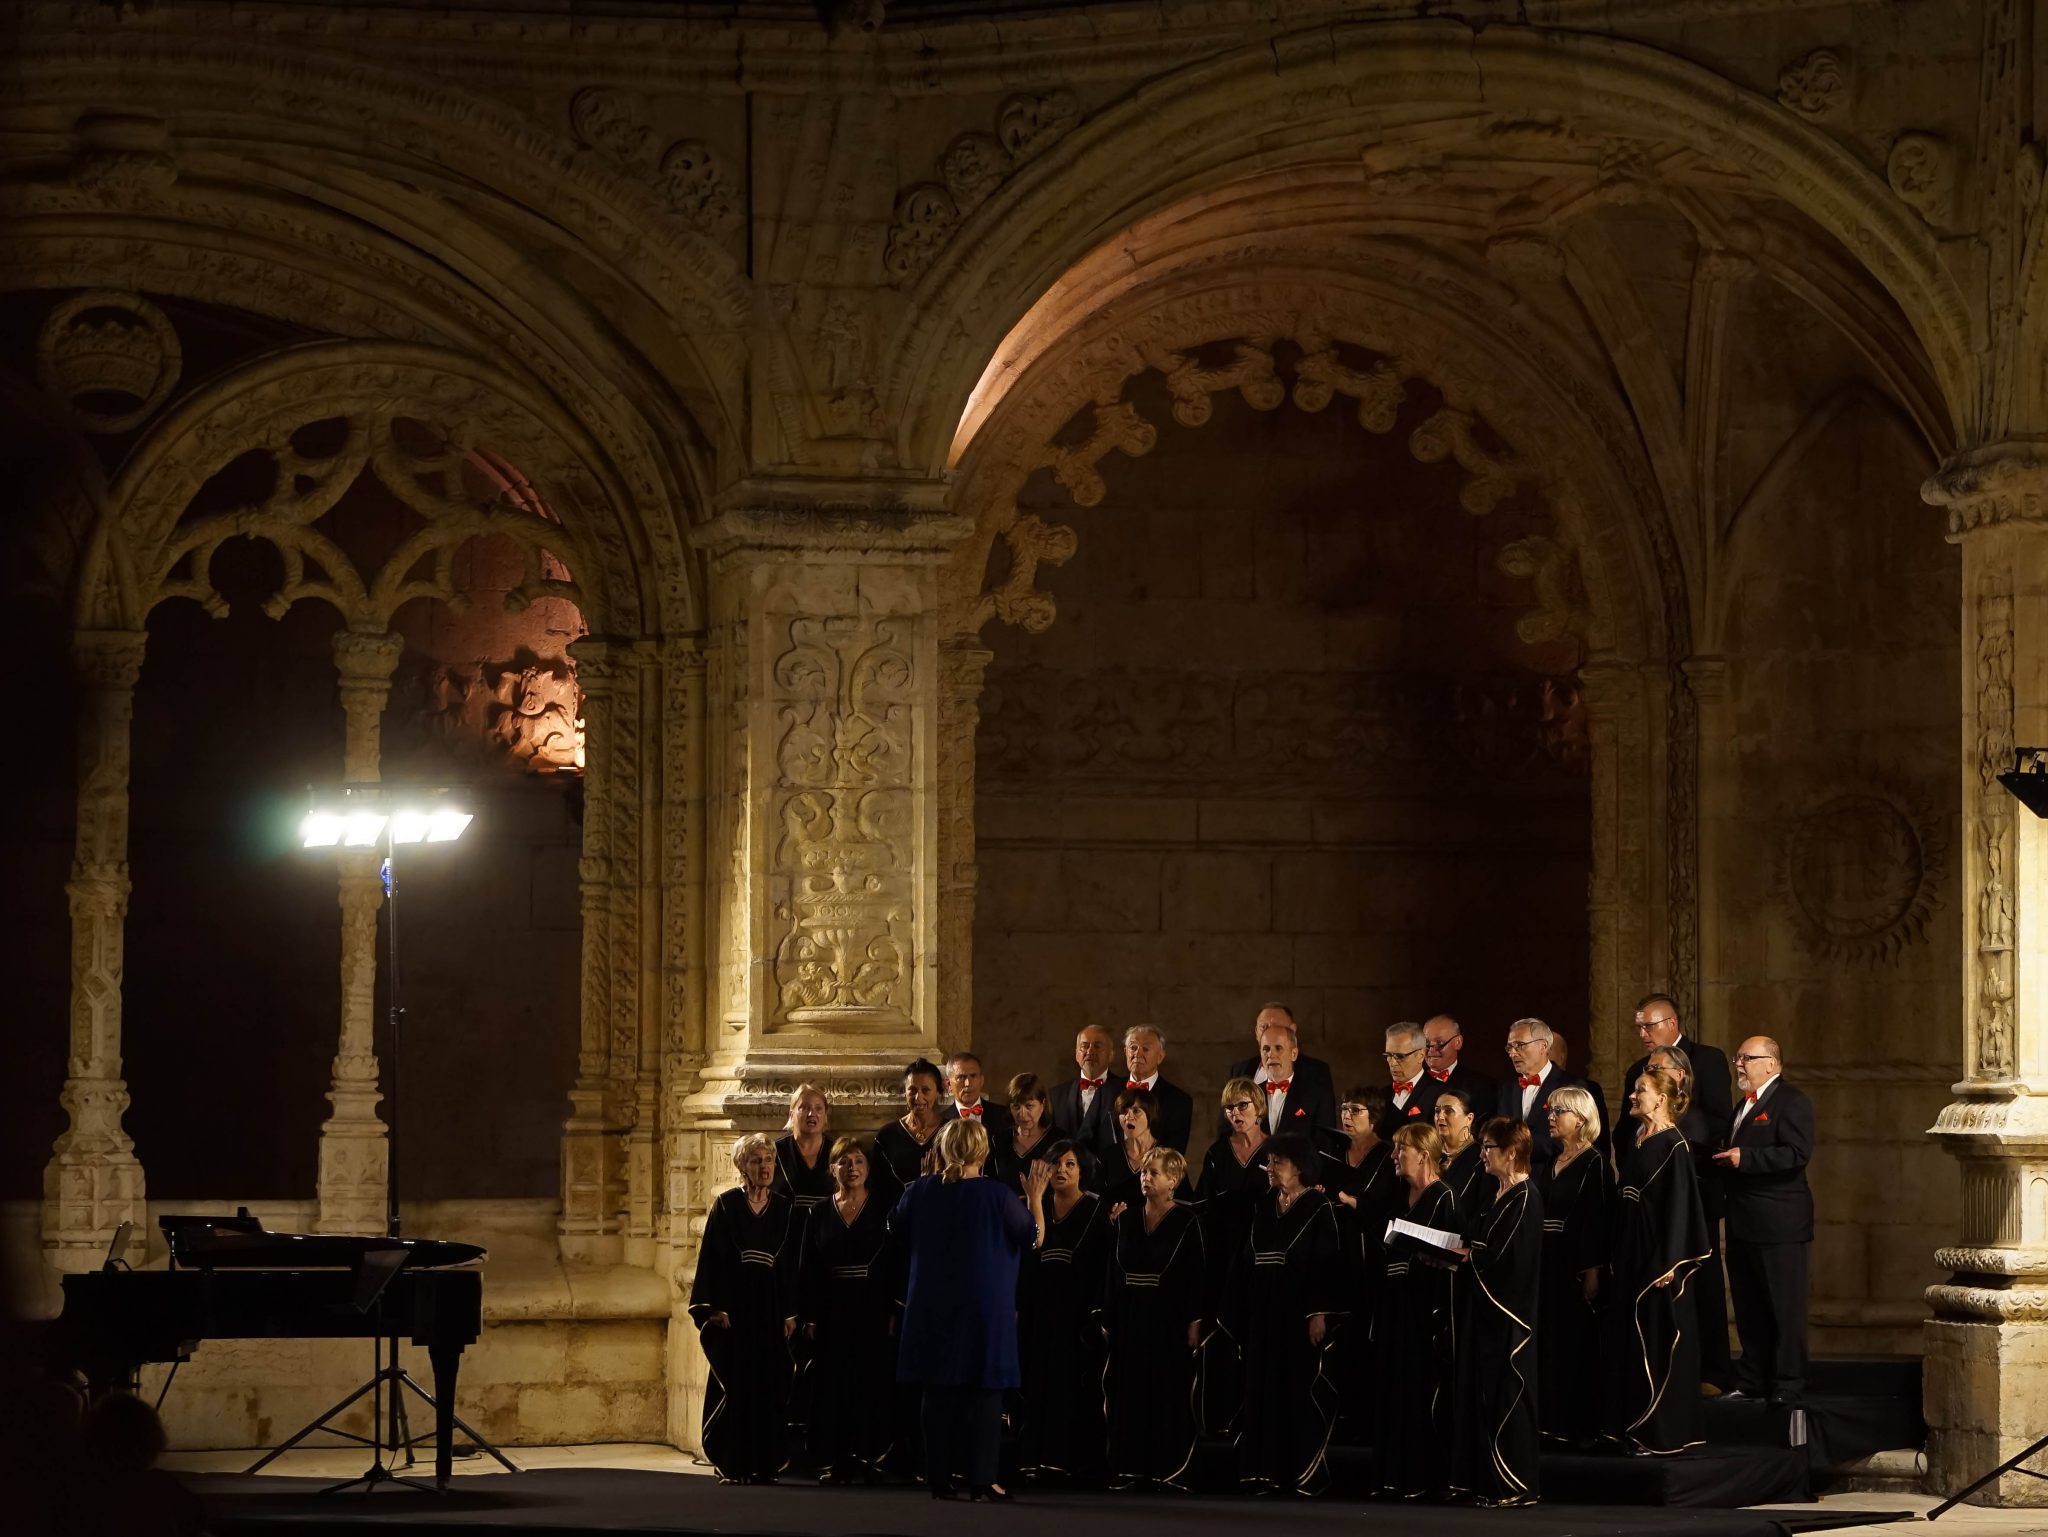 Coro composto por homens e mulheres, vestidos com roupas escuras no Claustro do Mosteiro dos Jerónimos à noite